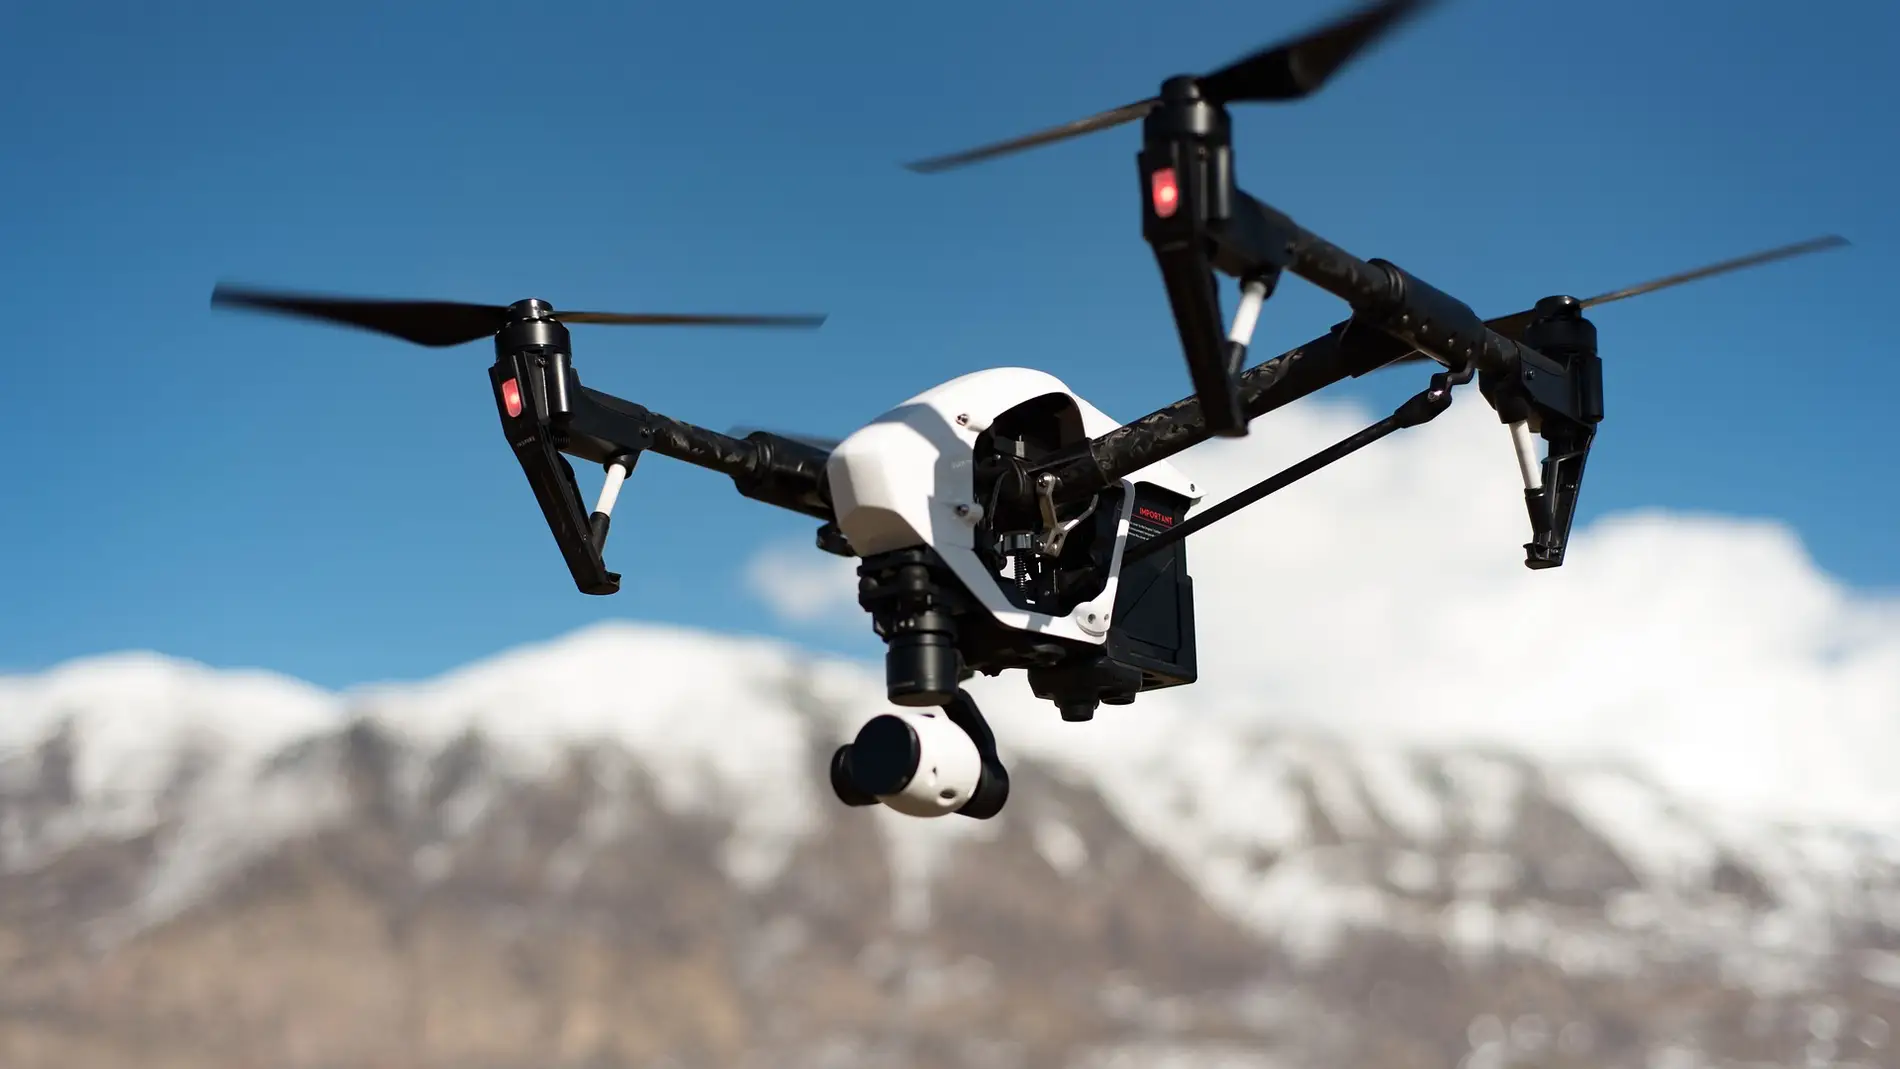 ¿Volar borracho un dron? Una mala idea que ha acabado en arresto